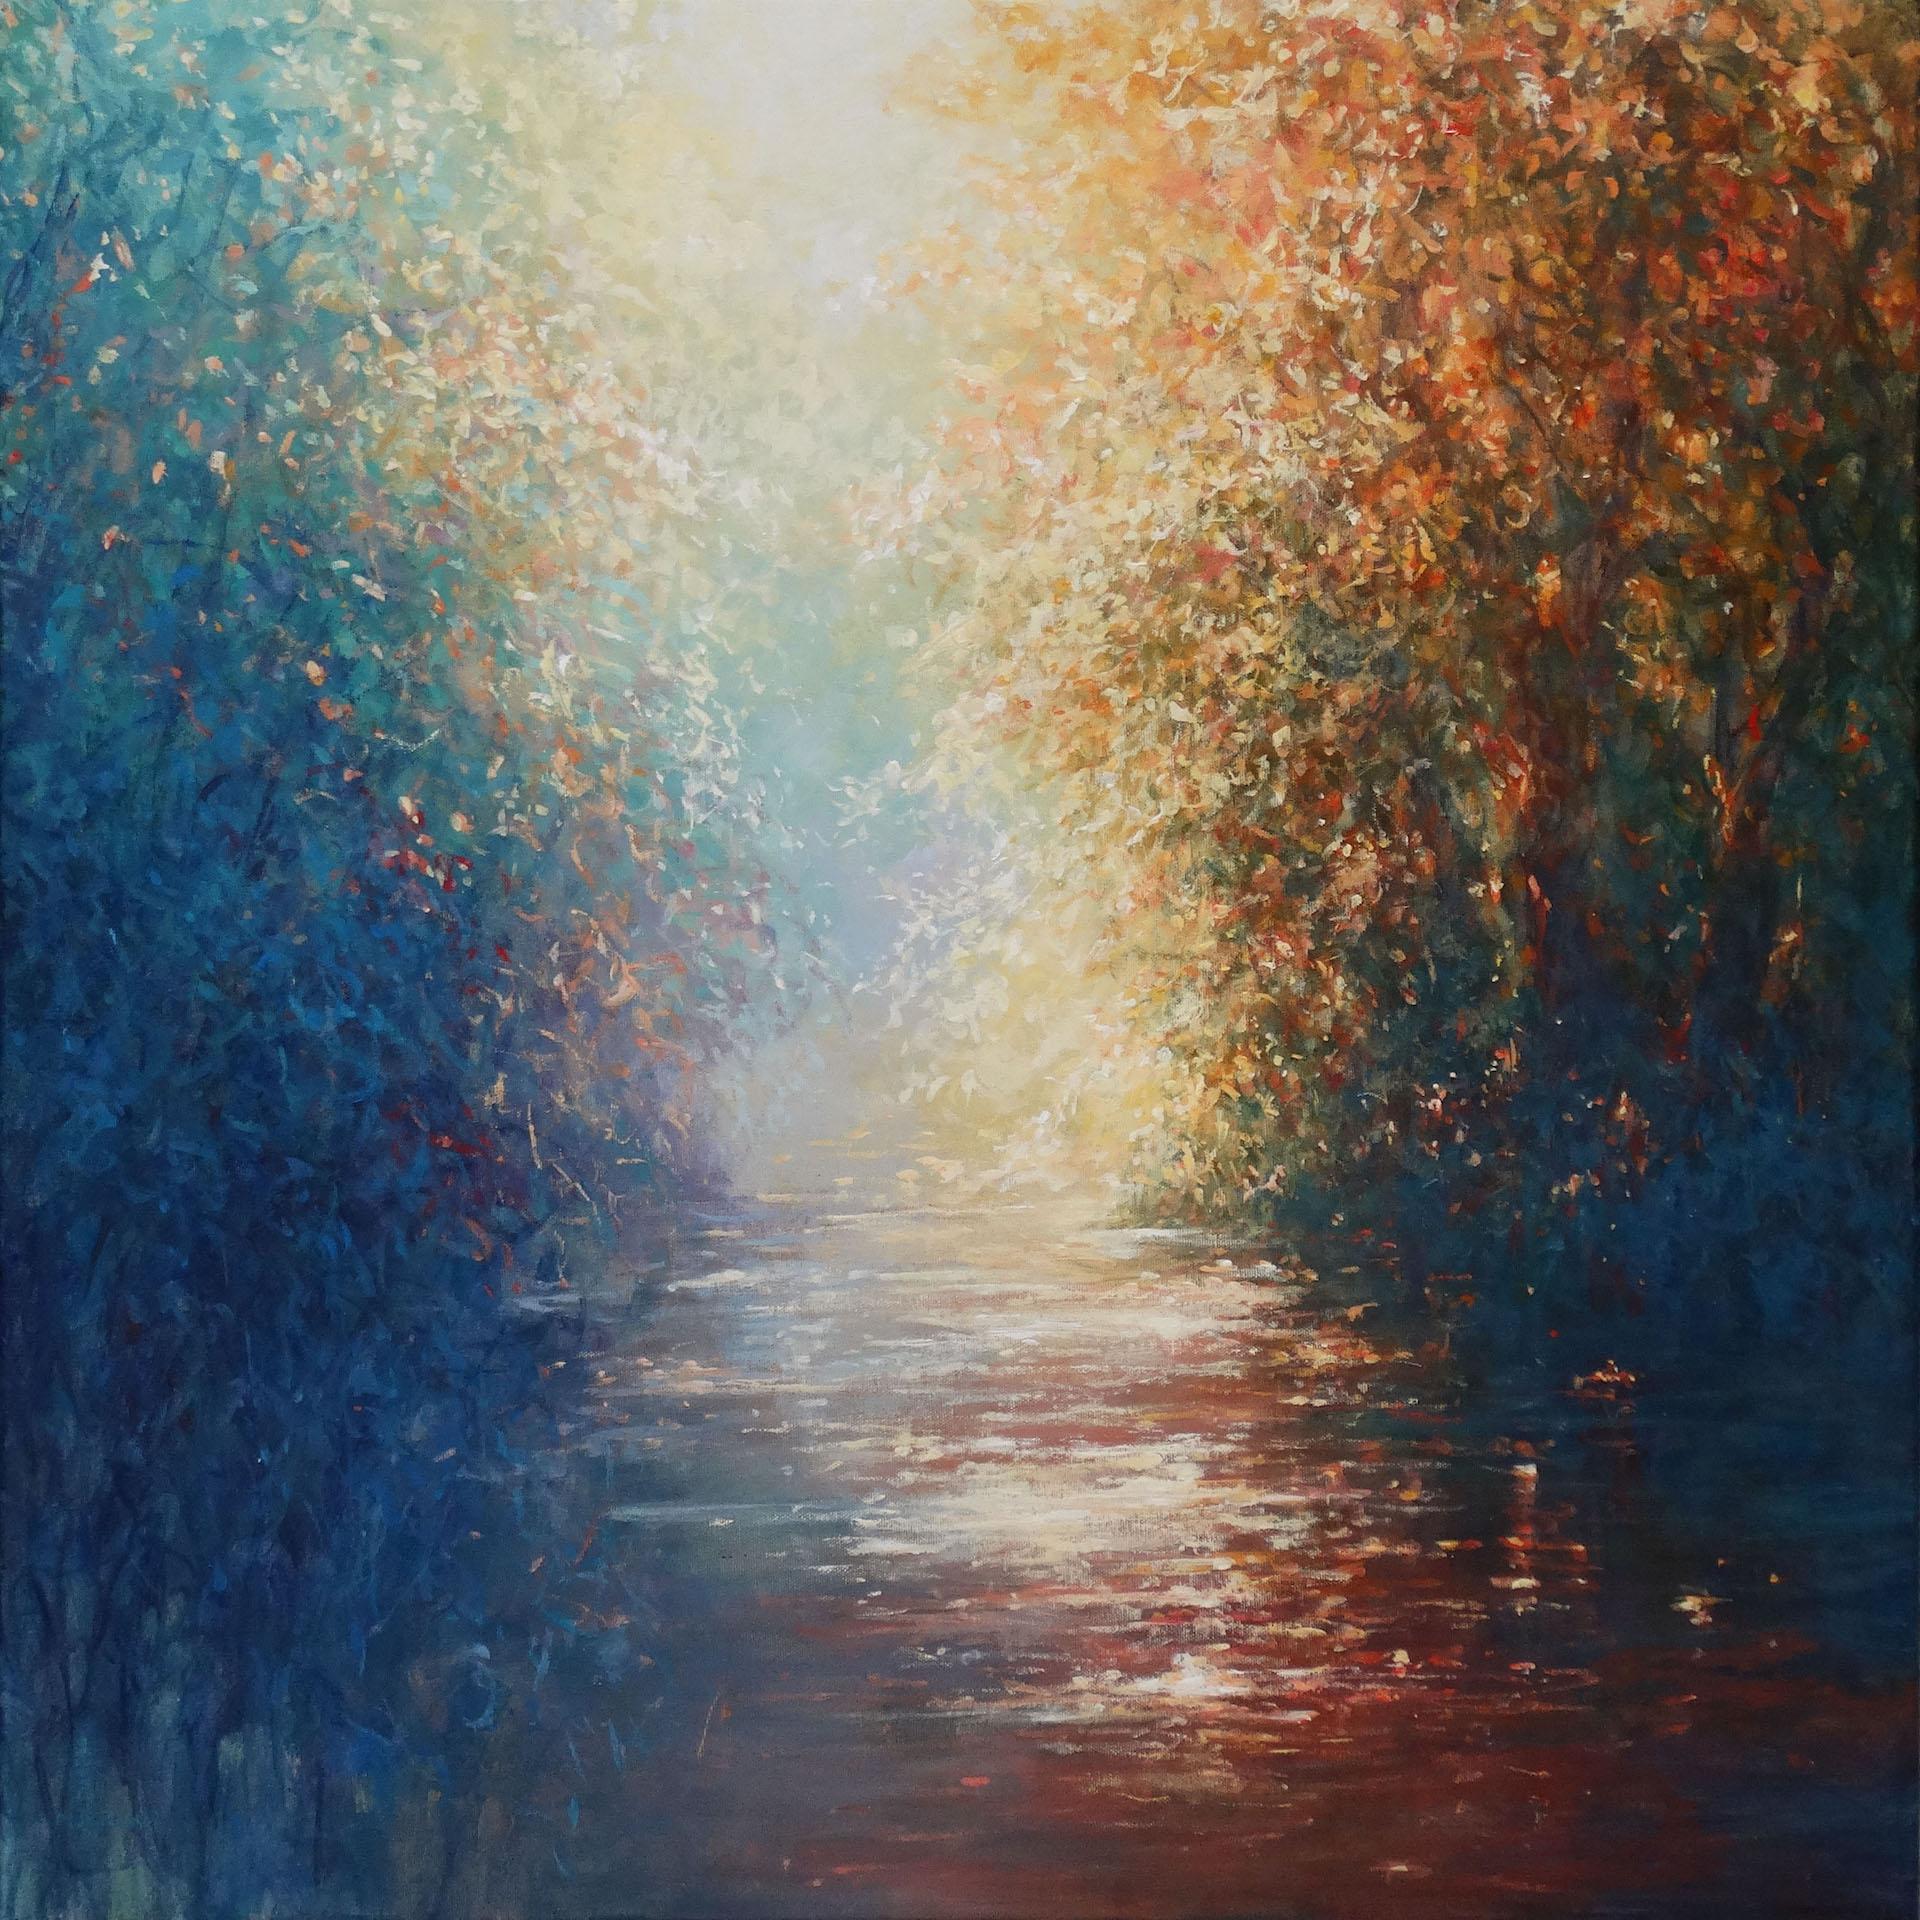 Landscape Painting Mariusz Kaldowski - River secrète, peinture de paysage impressionniste abordable, peinture de printemps